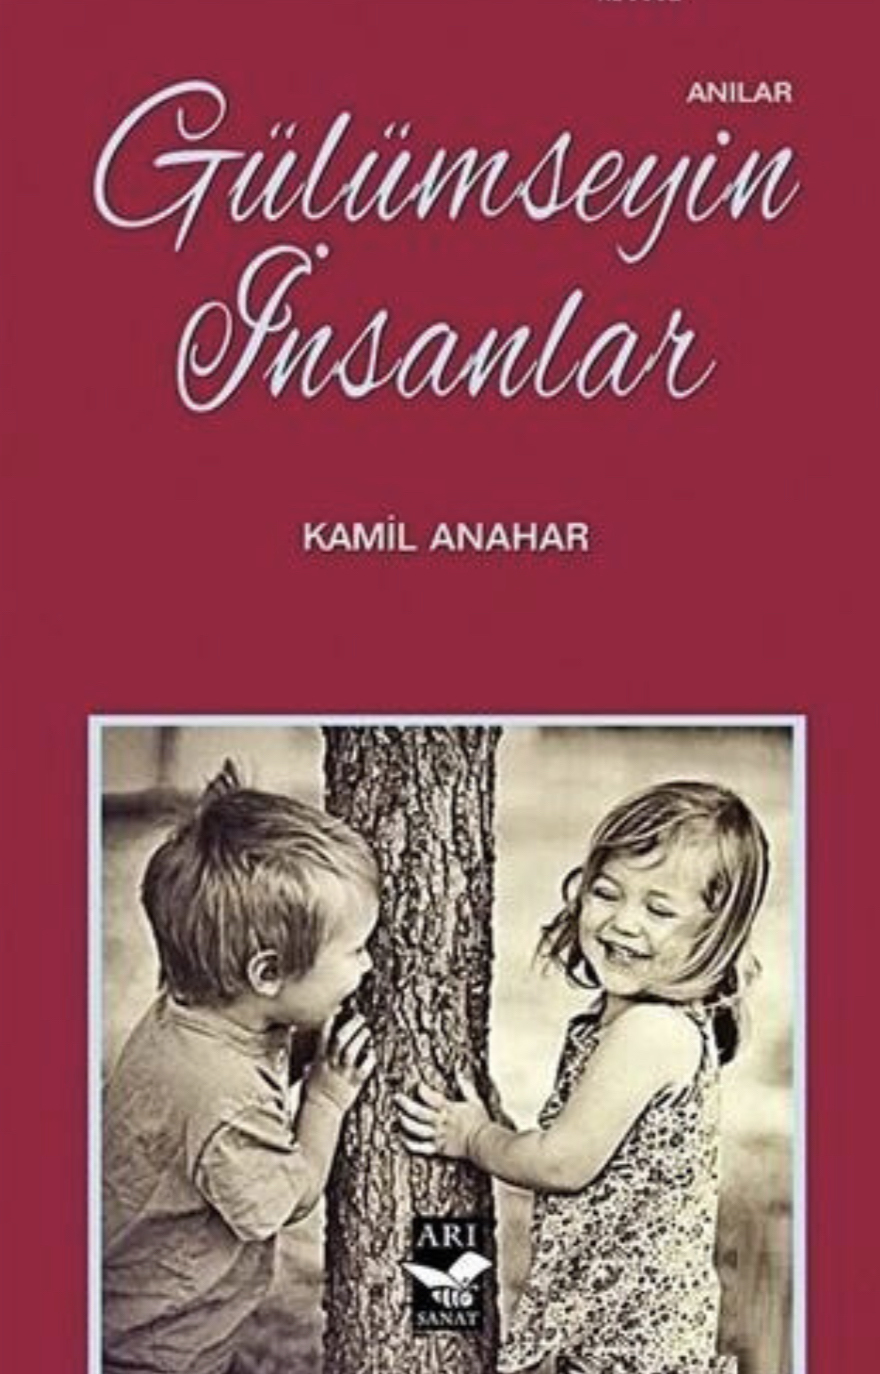 Trabzonlu Gazeteci Yazar Kamil Anahar’a Kitap Sponsorluğu